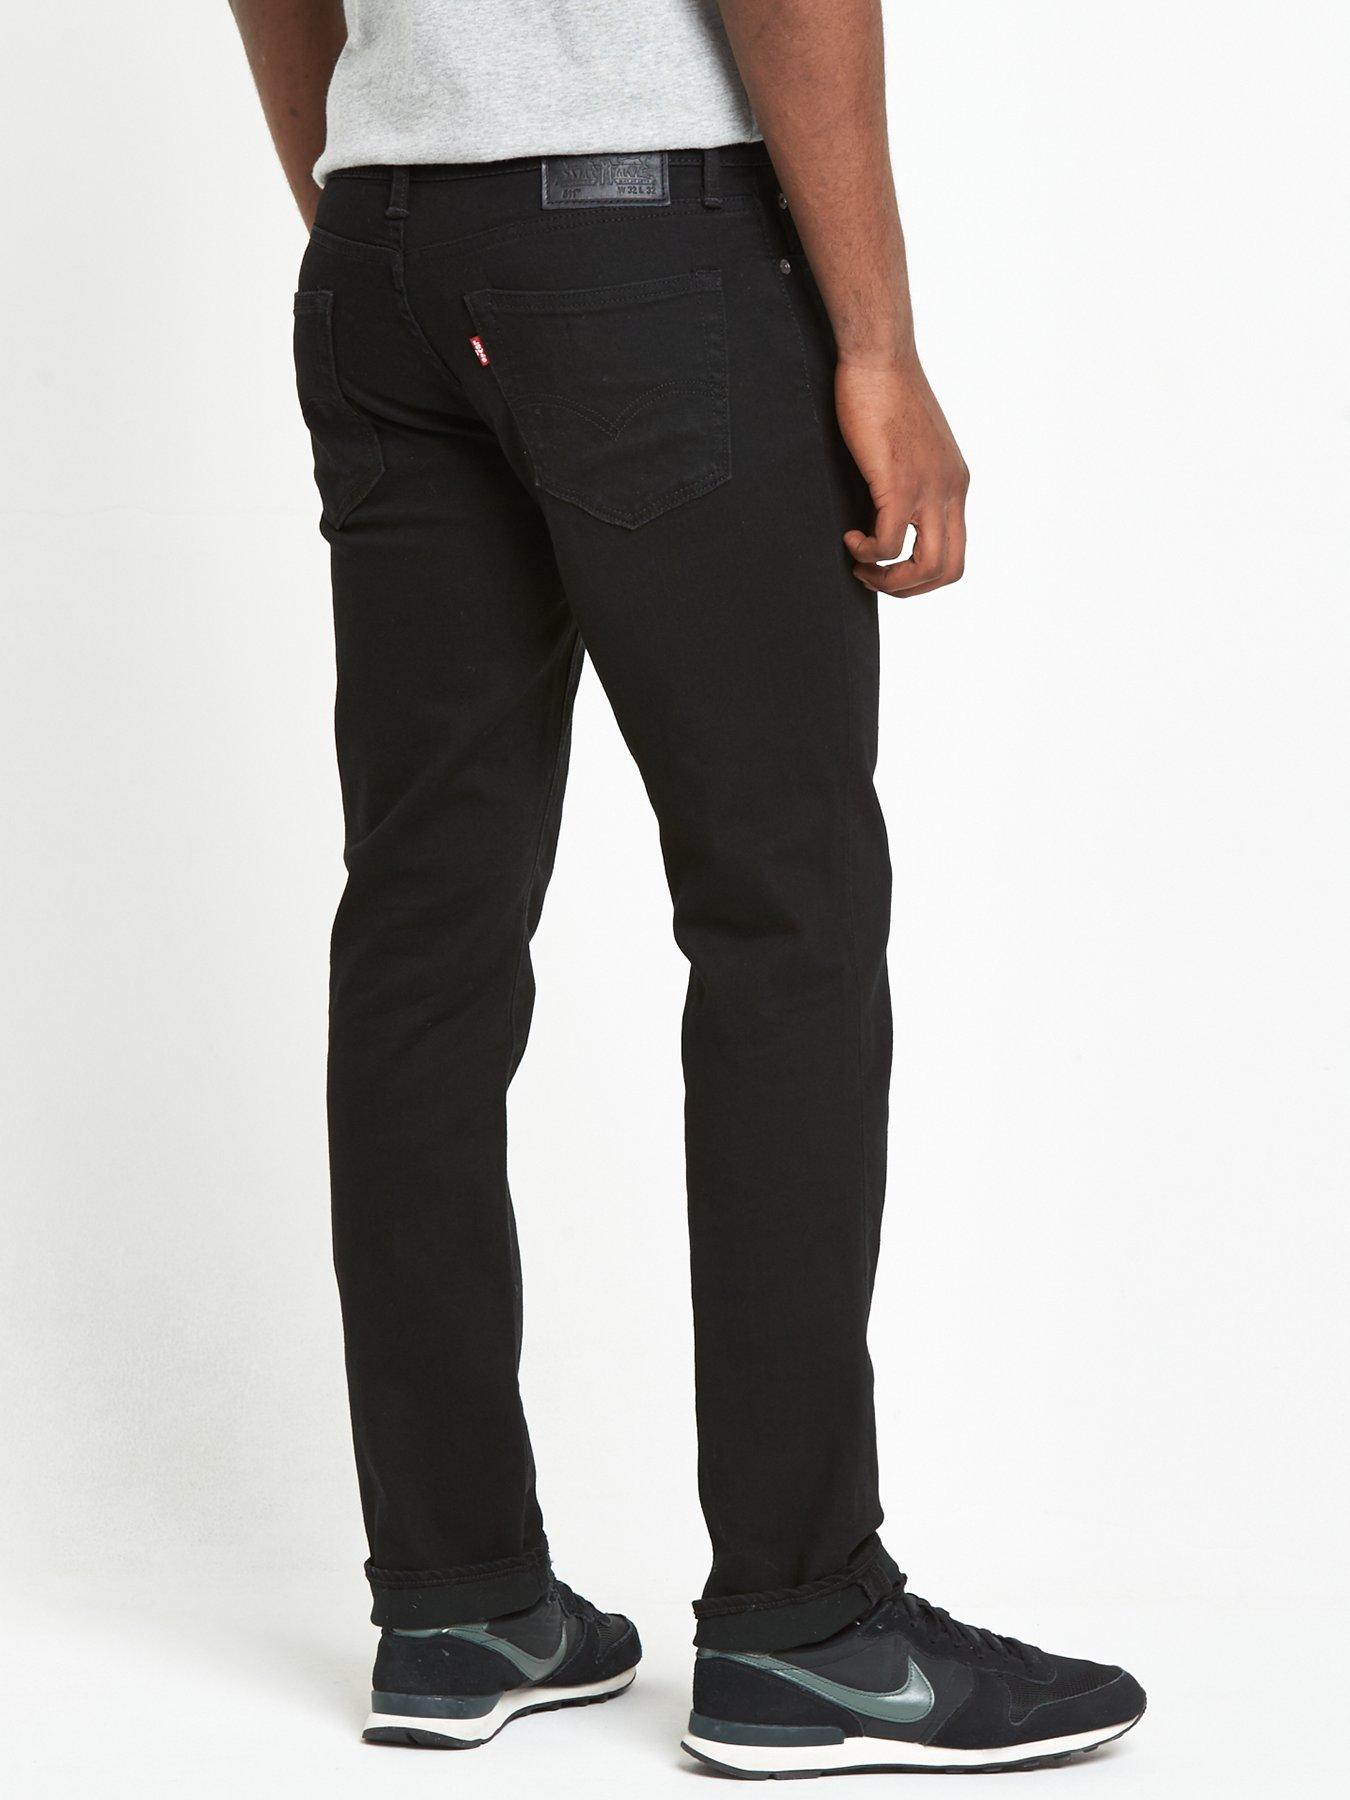 levis 511 black jeans 